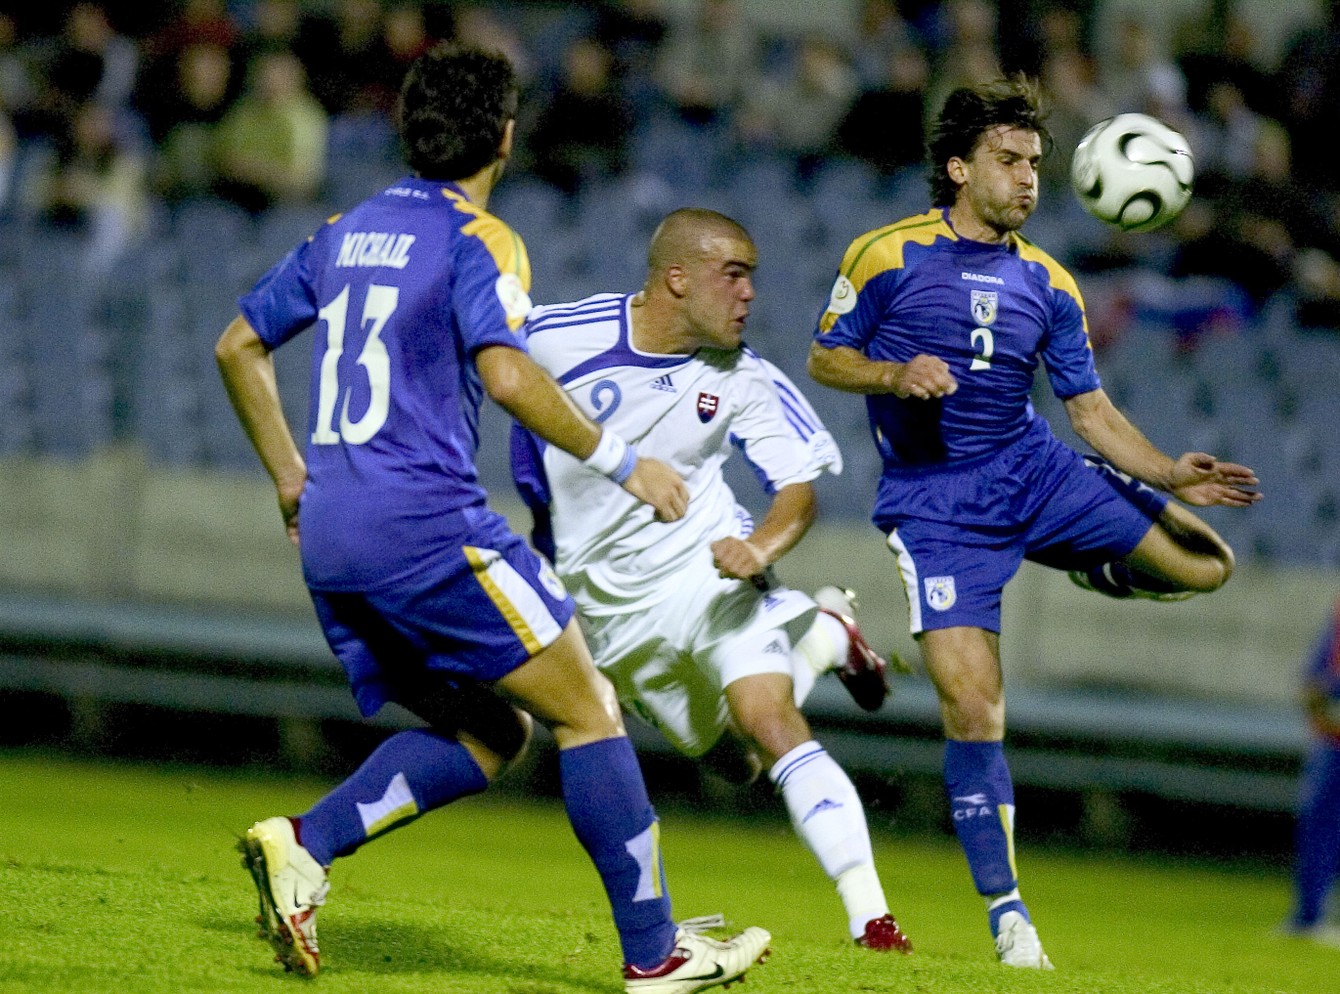 Filip Šebo v súboji s cyperskými hráčmi Michailom (č.13) a Theodotouom (č. 2) v zápase Slovensko – Cyprus 6:1 v Bratislave (02.09.2006).